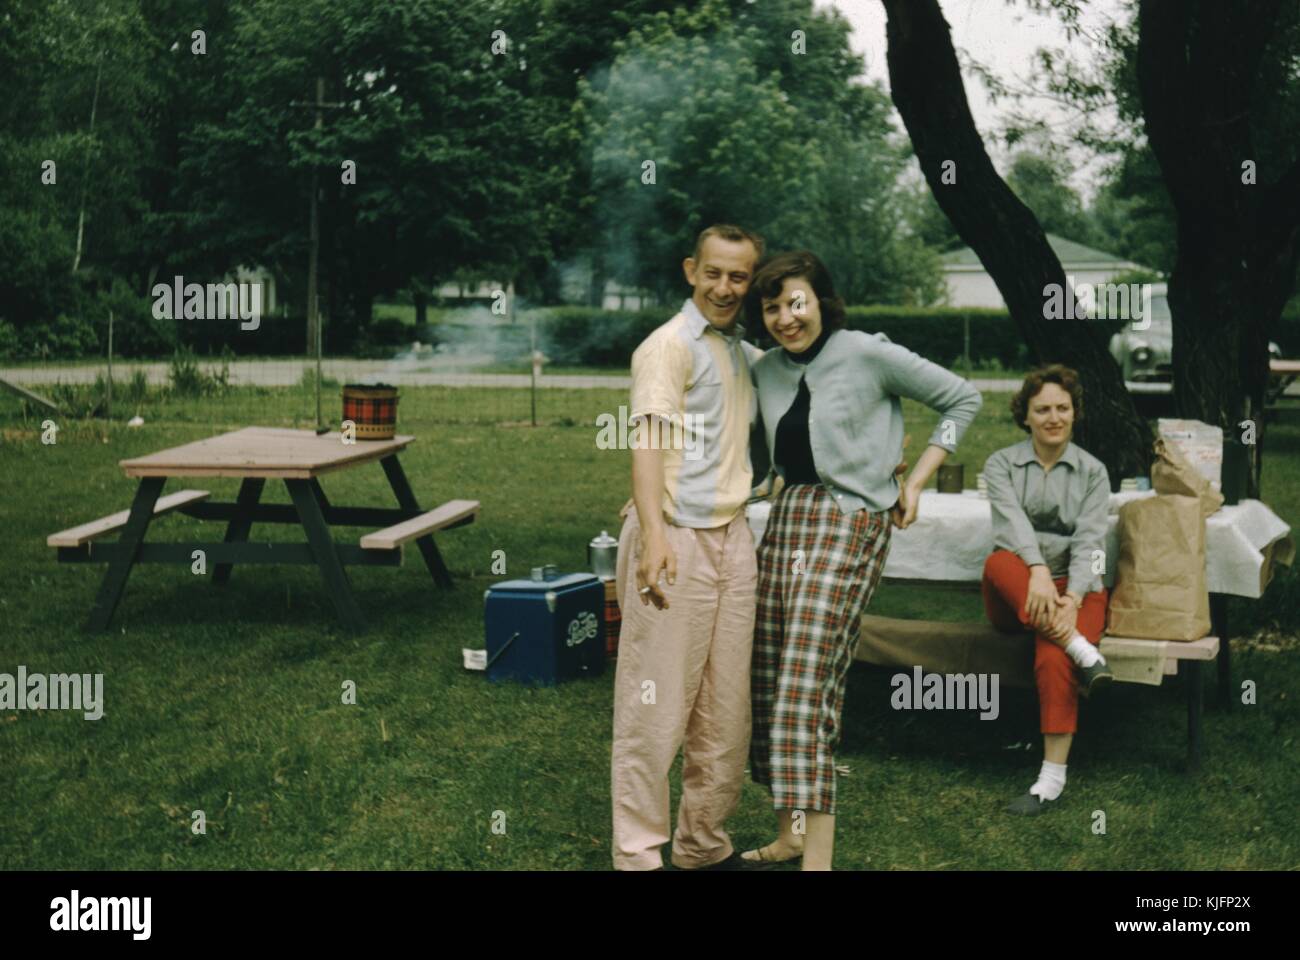 Paar für ein Bild an einem Park posiert, Mann ist das Rauchen einer Zigarette, hinter Ihnen eine Frau an einem Picknicktisch mit einem Tuch abgedeckt, ein kühler, und was scheinen Beutel des Lebensmittelgeschäfts, die Leute scheinen alle in 1950er Jahren Kleidung, 1952. Stockfoto